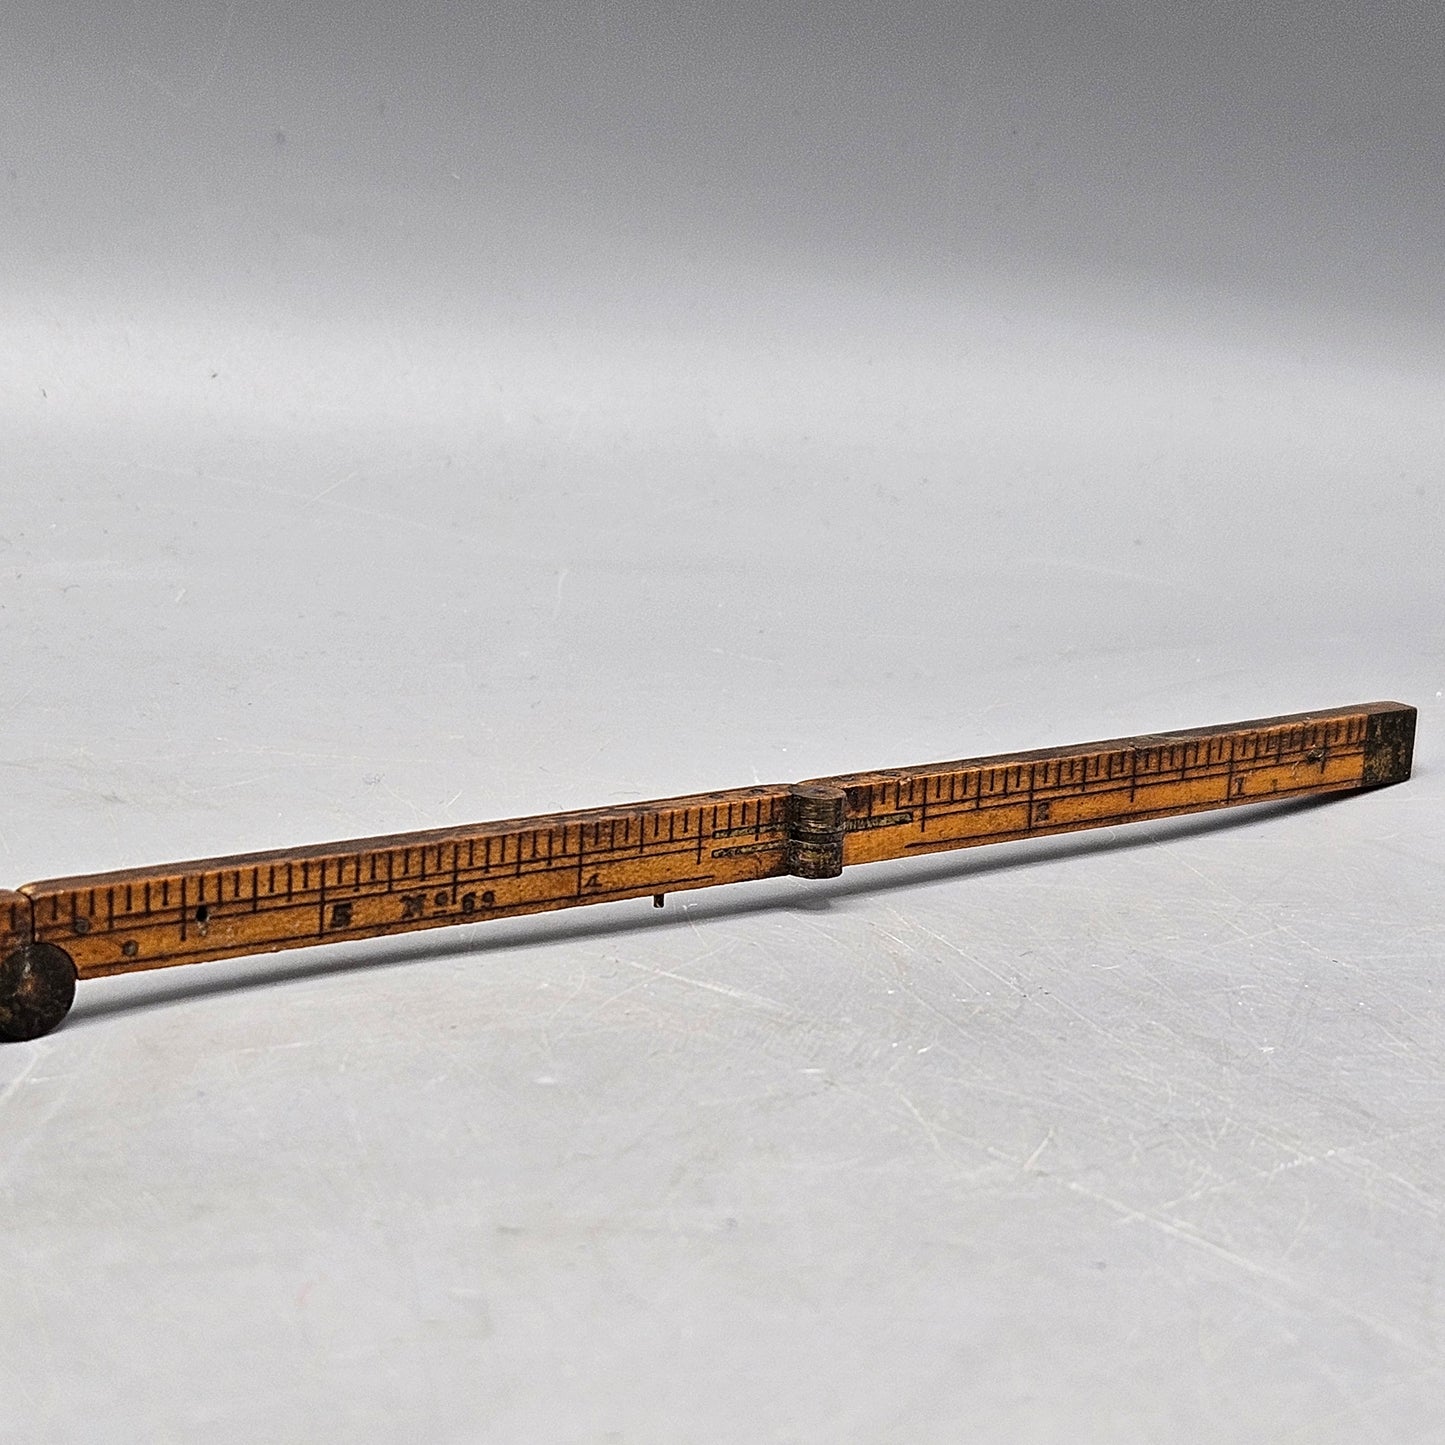 Vintage Wooden Folding Ruler